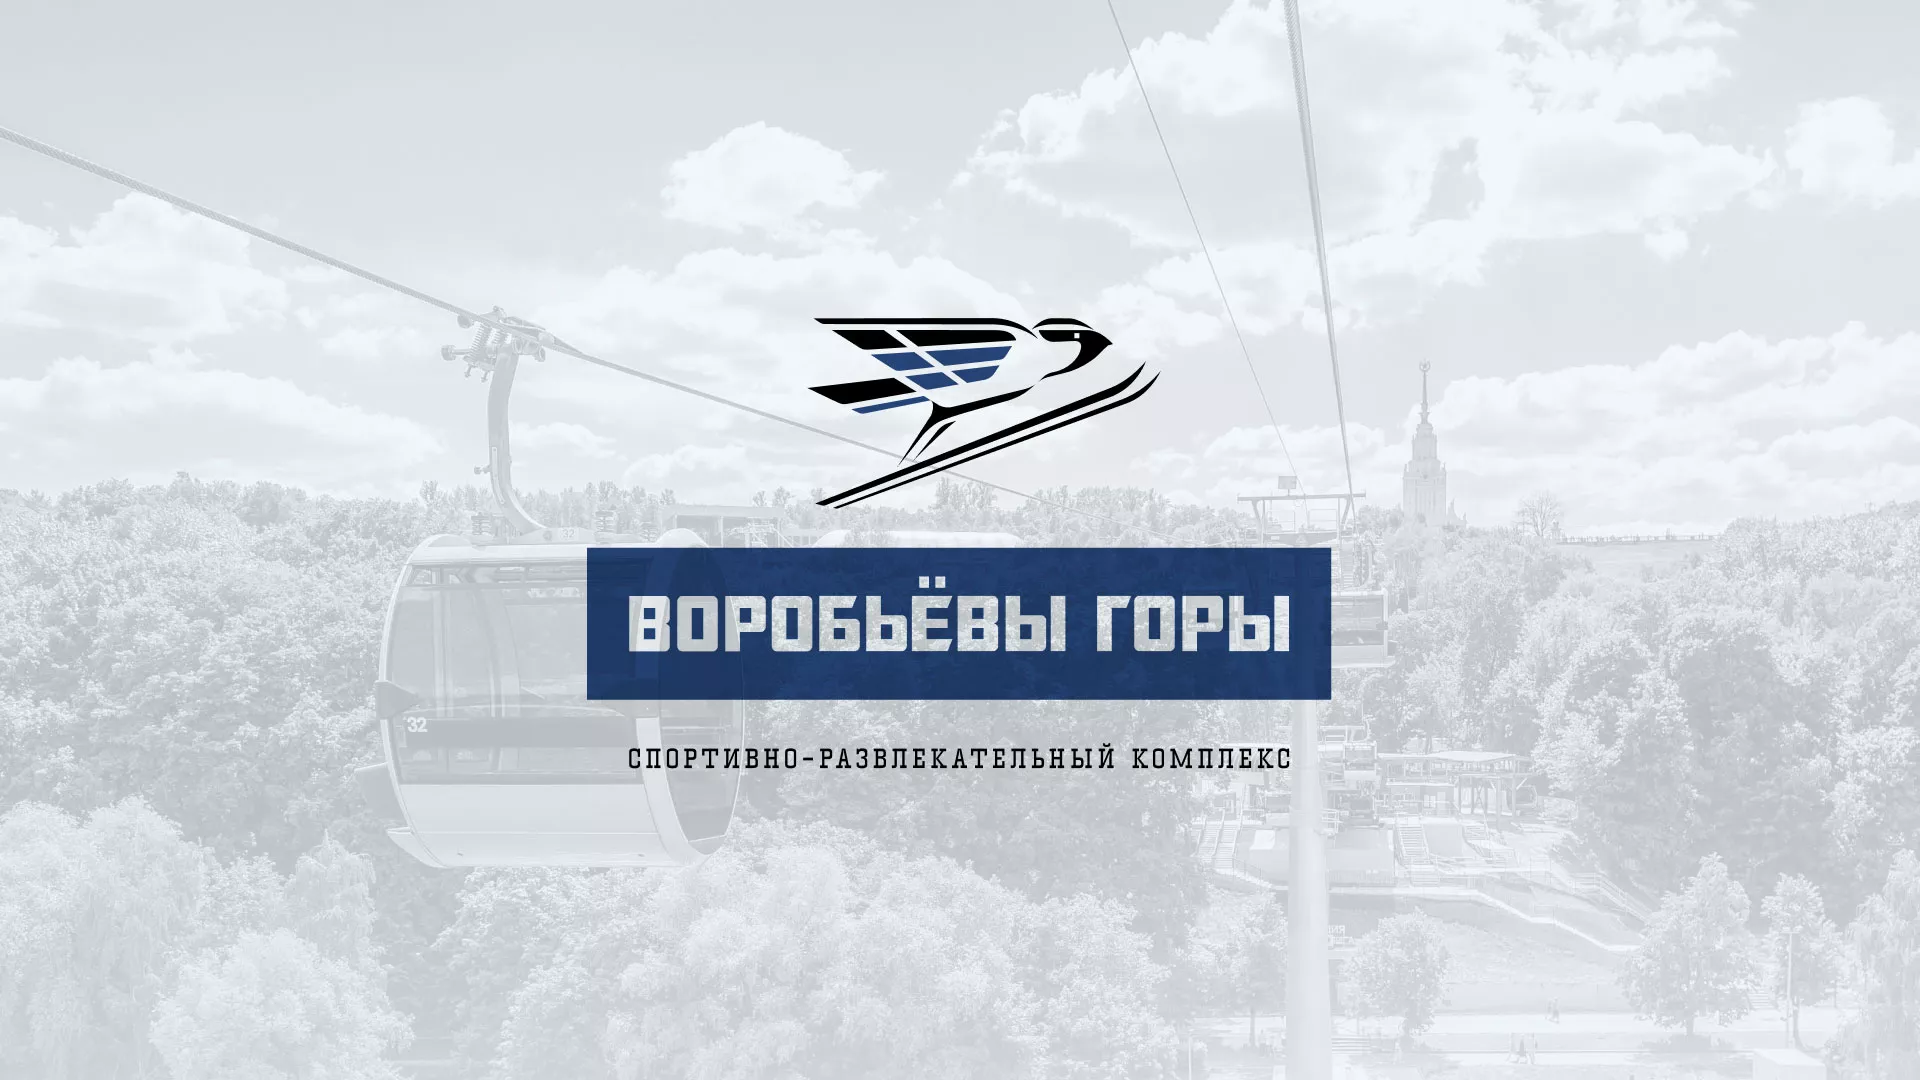 Разработка сайта в Усолье-Сибирском для спортивно-развлекательного комплекса «Воробьёвы горы»